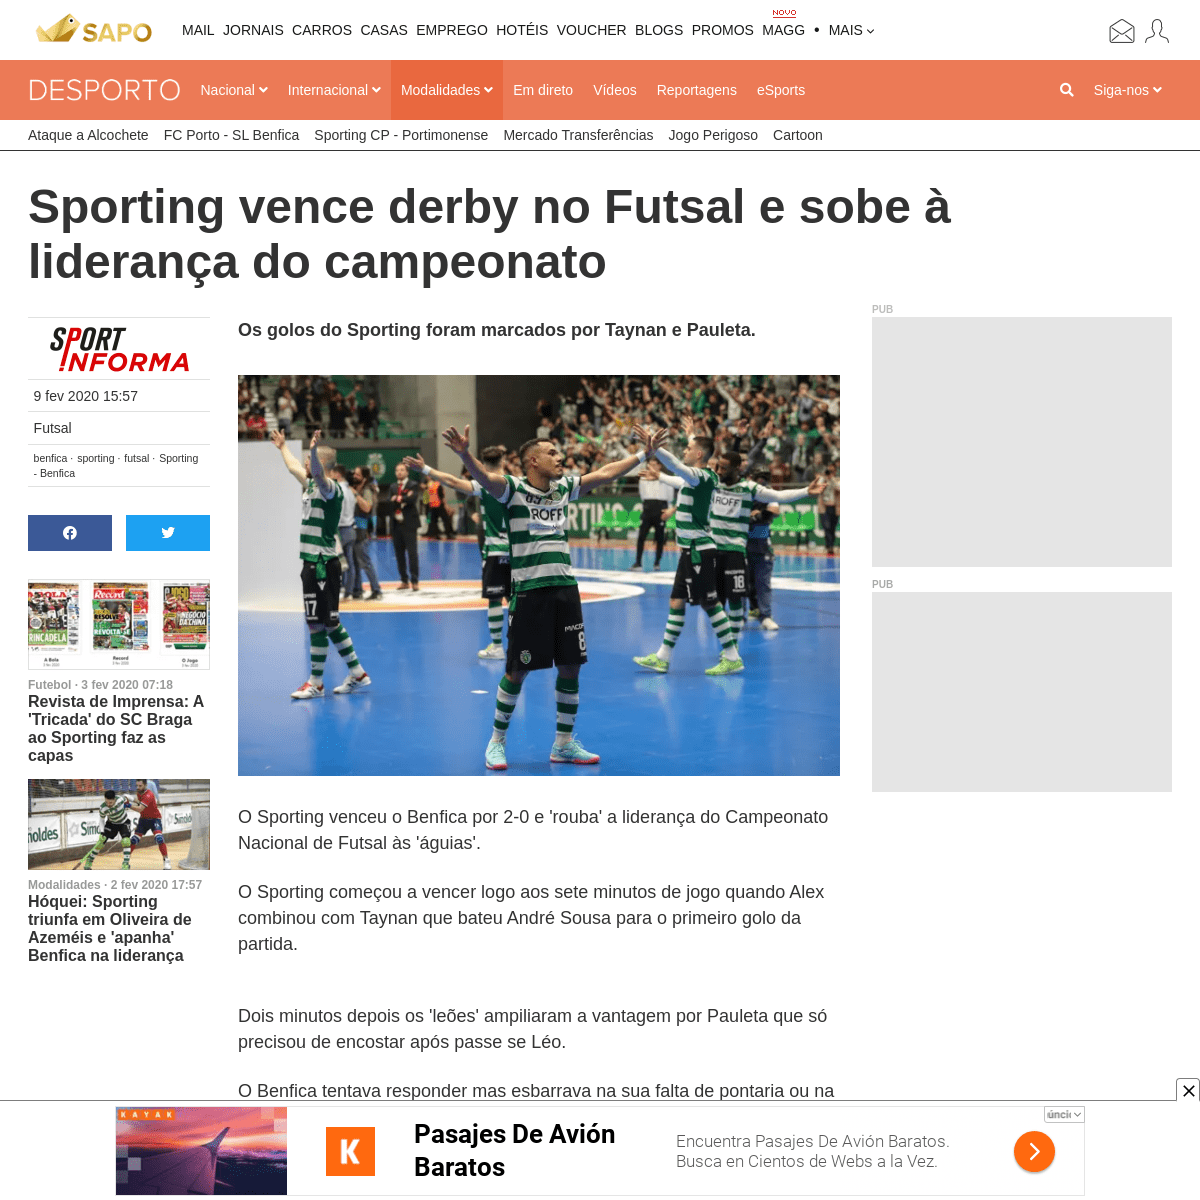 A complete backup of desporto.sapo.pt/modalidades/futsal/artigos/sporting-vence-derby-no-futsal-e-sobe-a-lideranca-do-campeonato